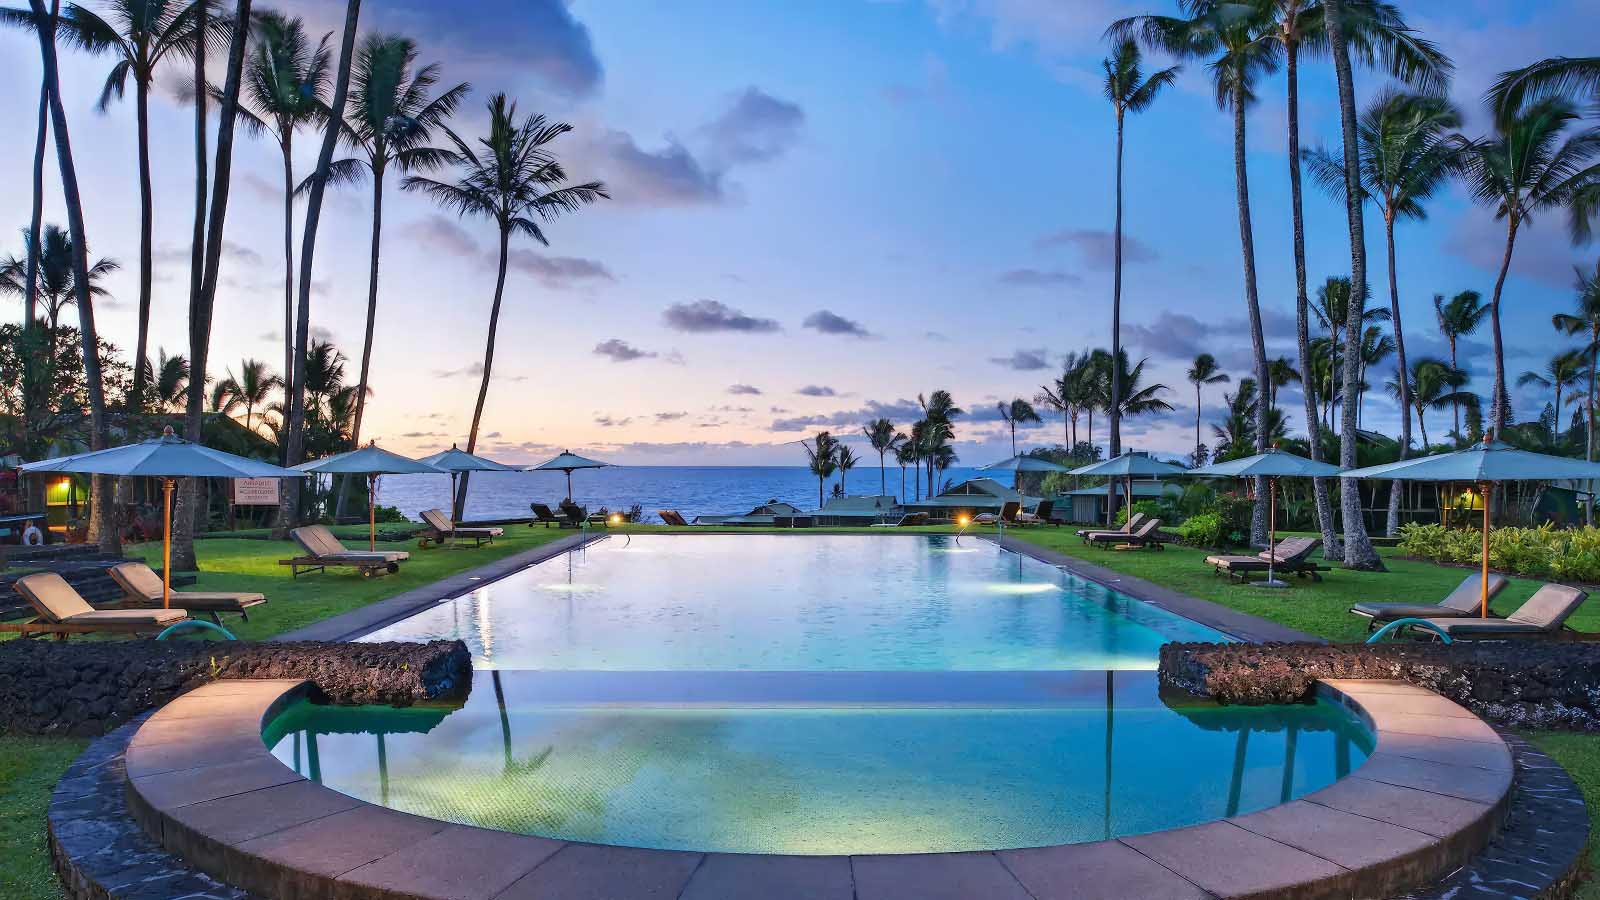 Hana Maui Resort, a Destination By Hyatt Residence